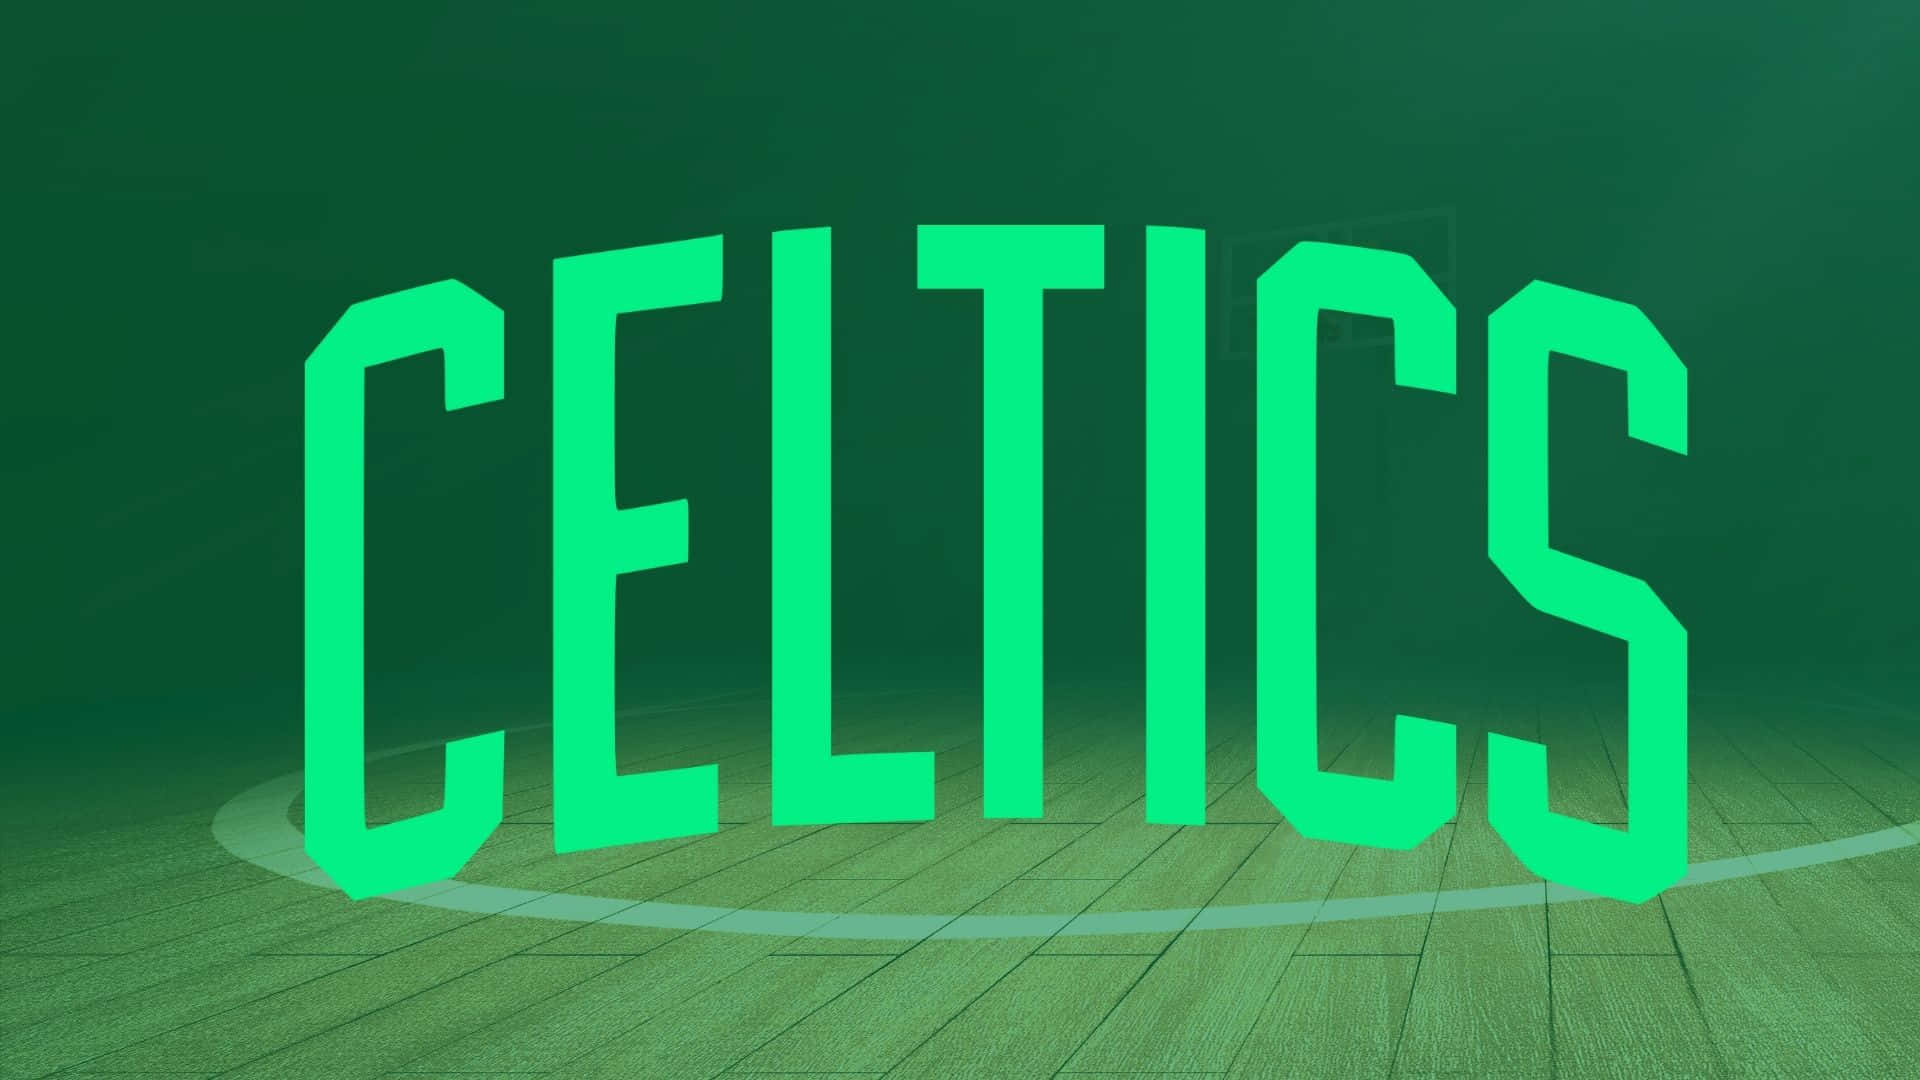 Escalahasta La Cima Con Los Boston Celtics Fondo de pantalla